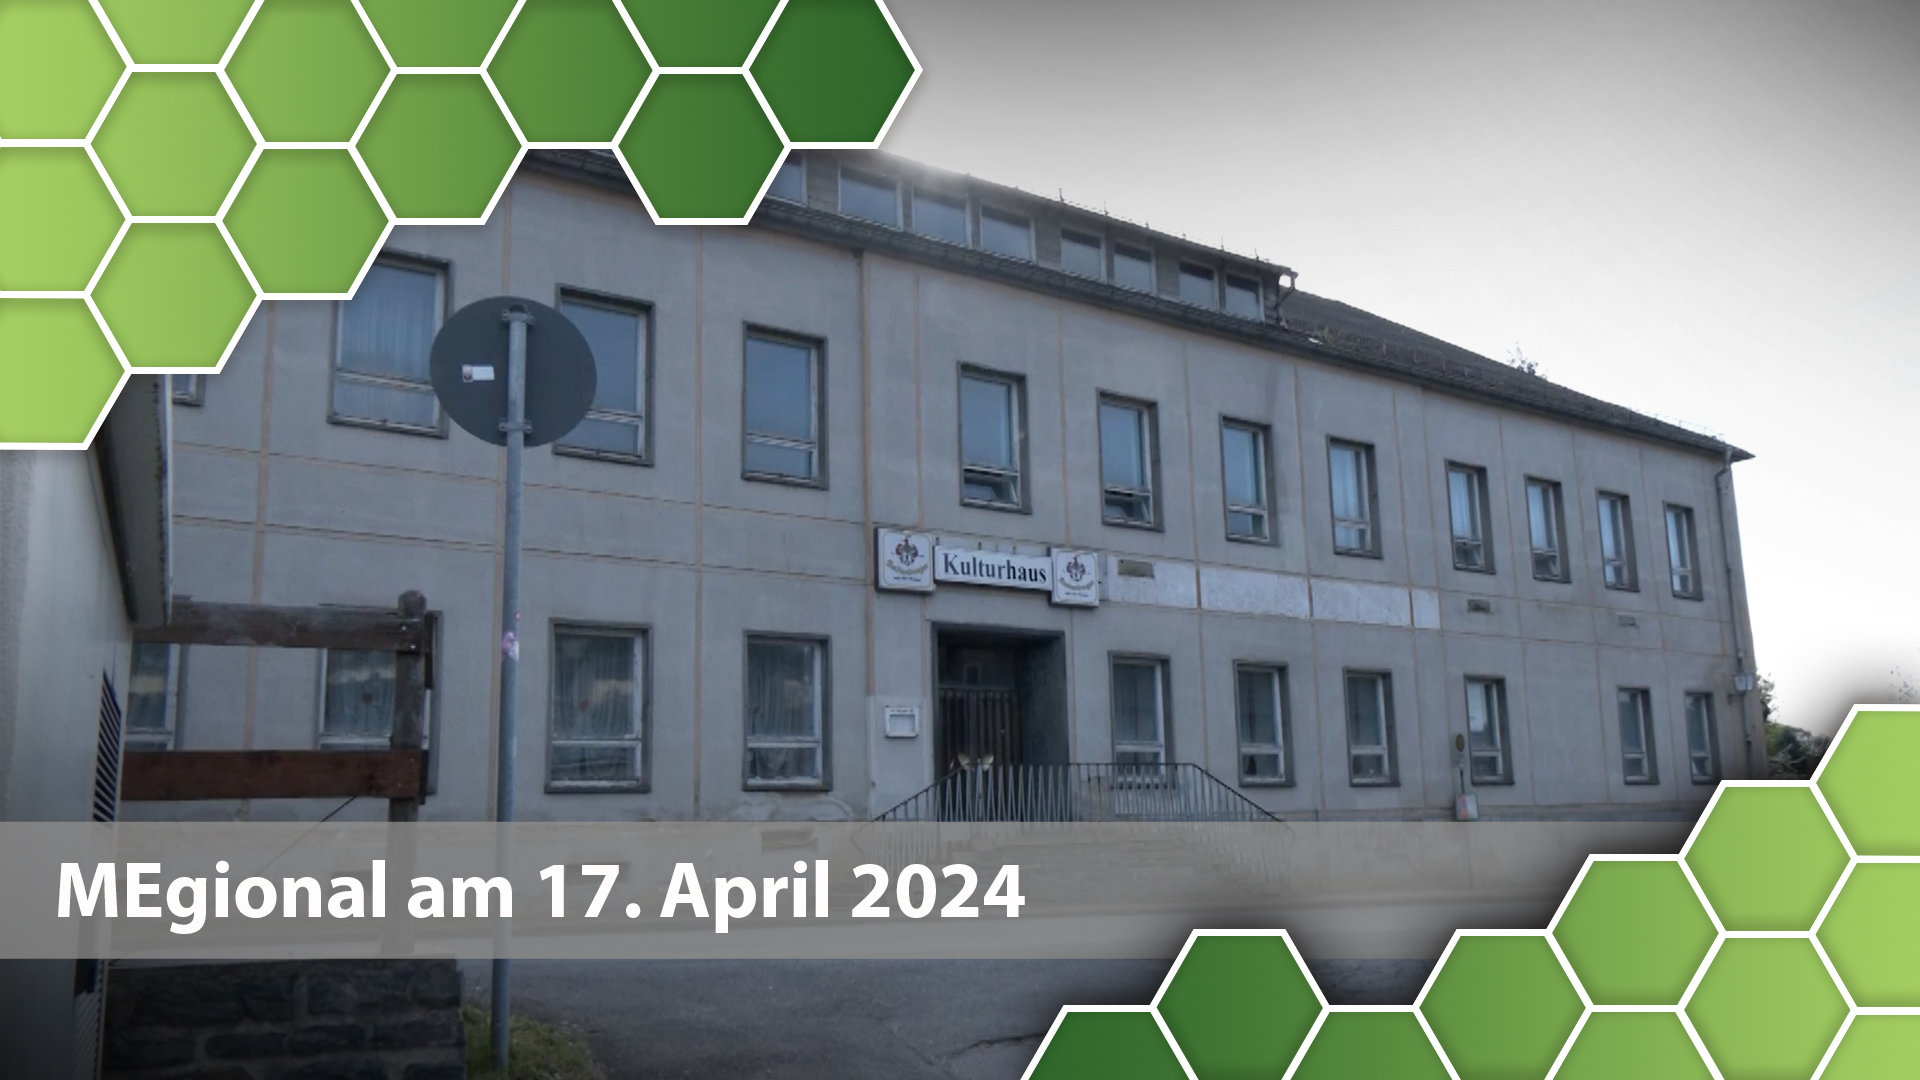 MEgional am 17. April 2024 mit dem Tag der offenen Tür im Kulturhaus Borstendorf